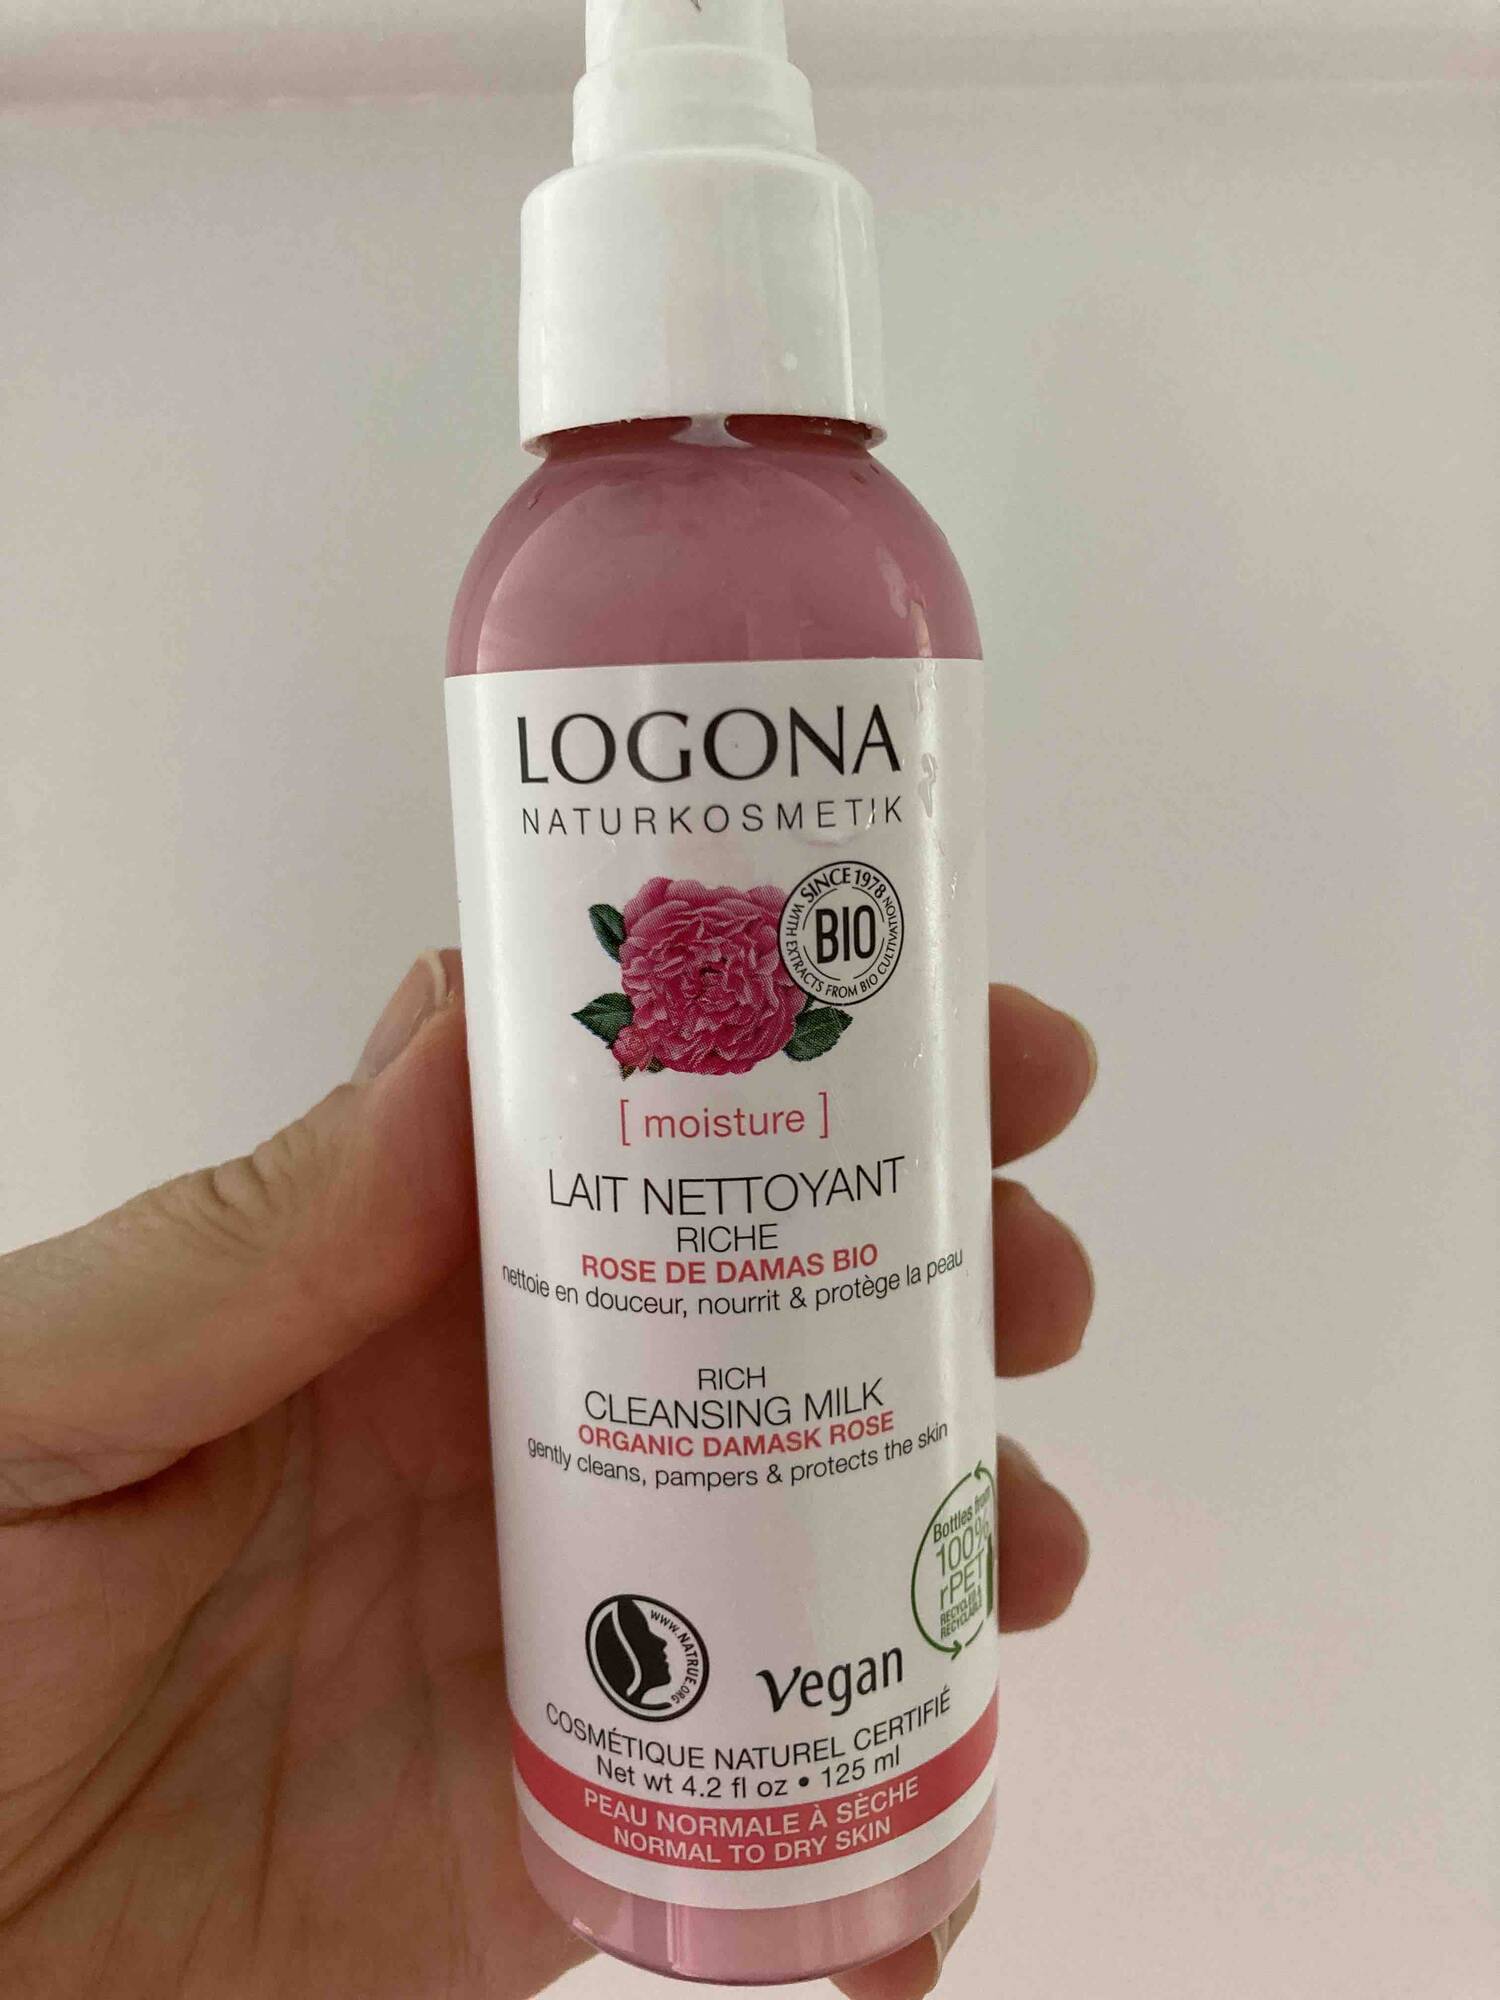 LOGONA - Lait nettoyant riche rose de damas bio